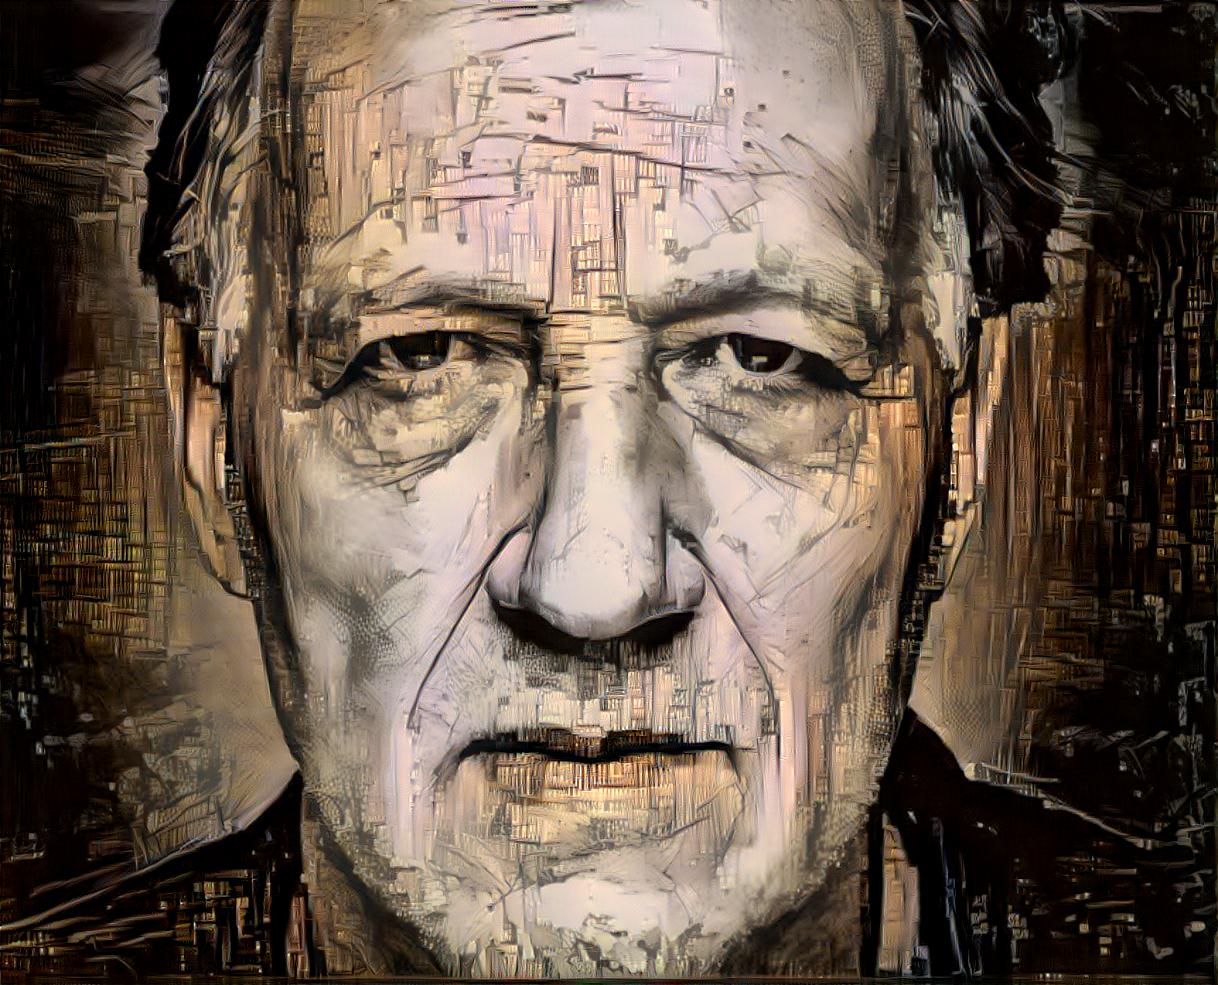 Deep Dreaming legendary director Werner Herzog